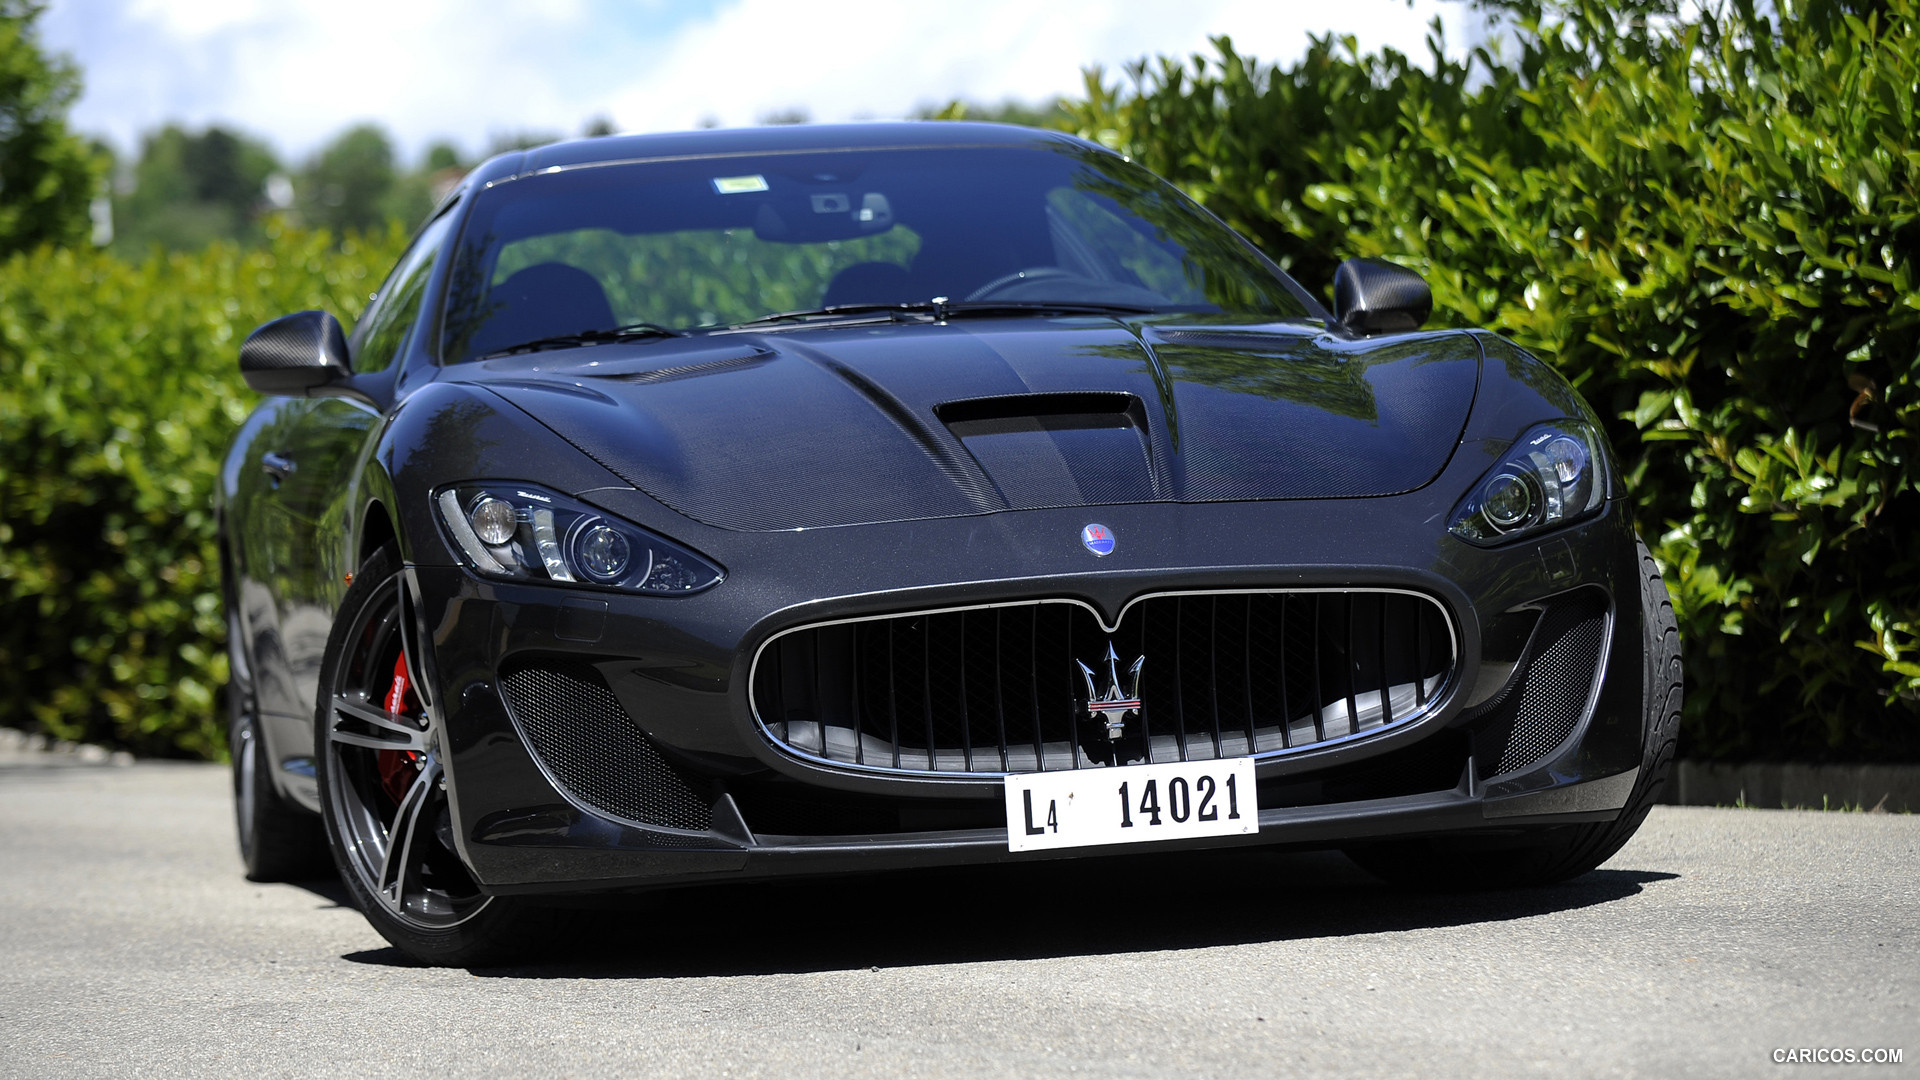 2014 Maserati GranTurismo MC Stradale HD wallpapers, Desktop wallpaper - most viewed